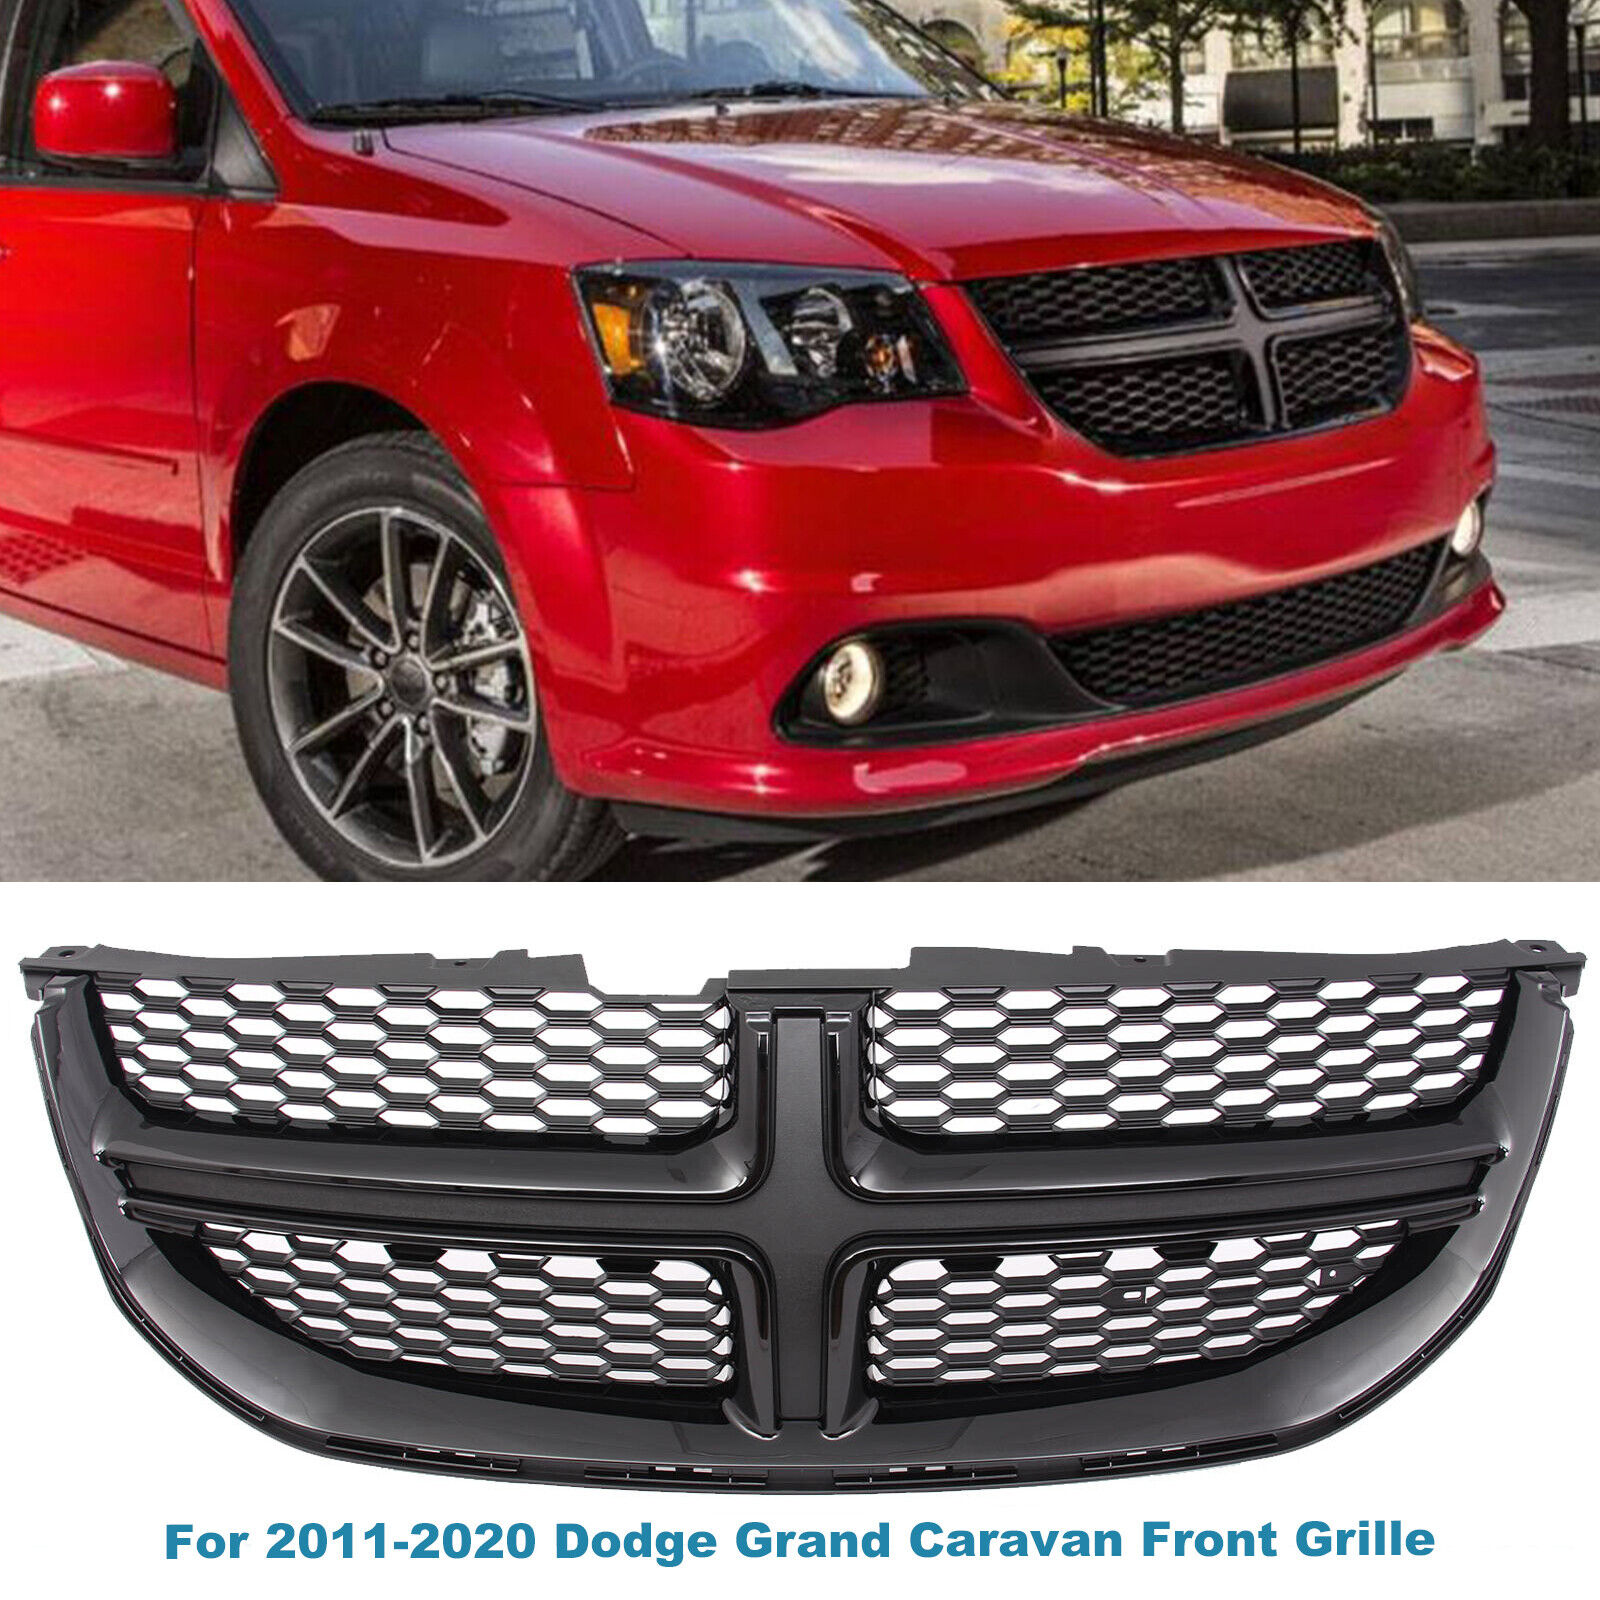 For 2011-2020 Dodge Grand Caravan Front Grille Upper Bumper Grille Black